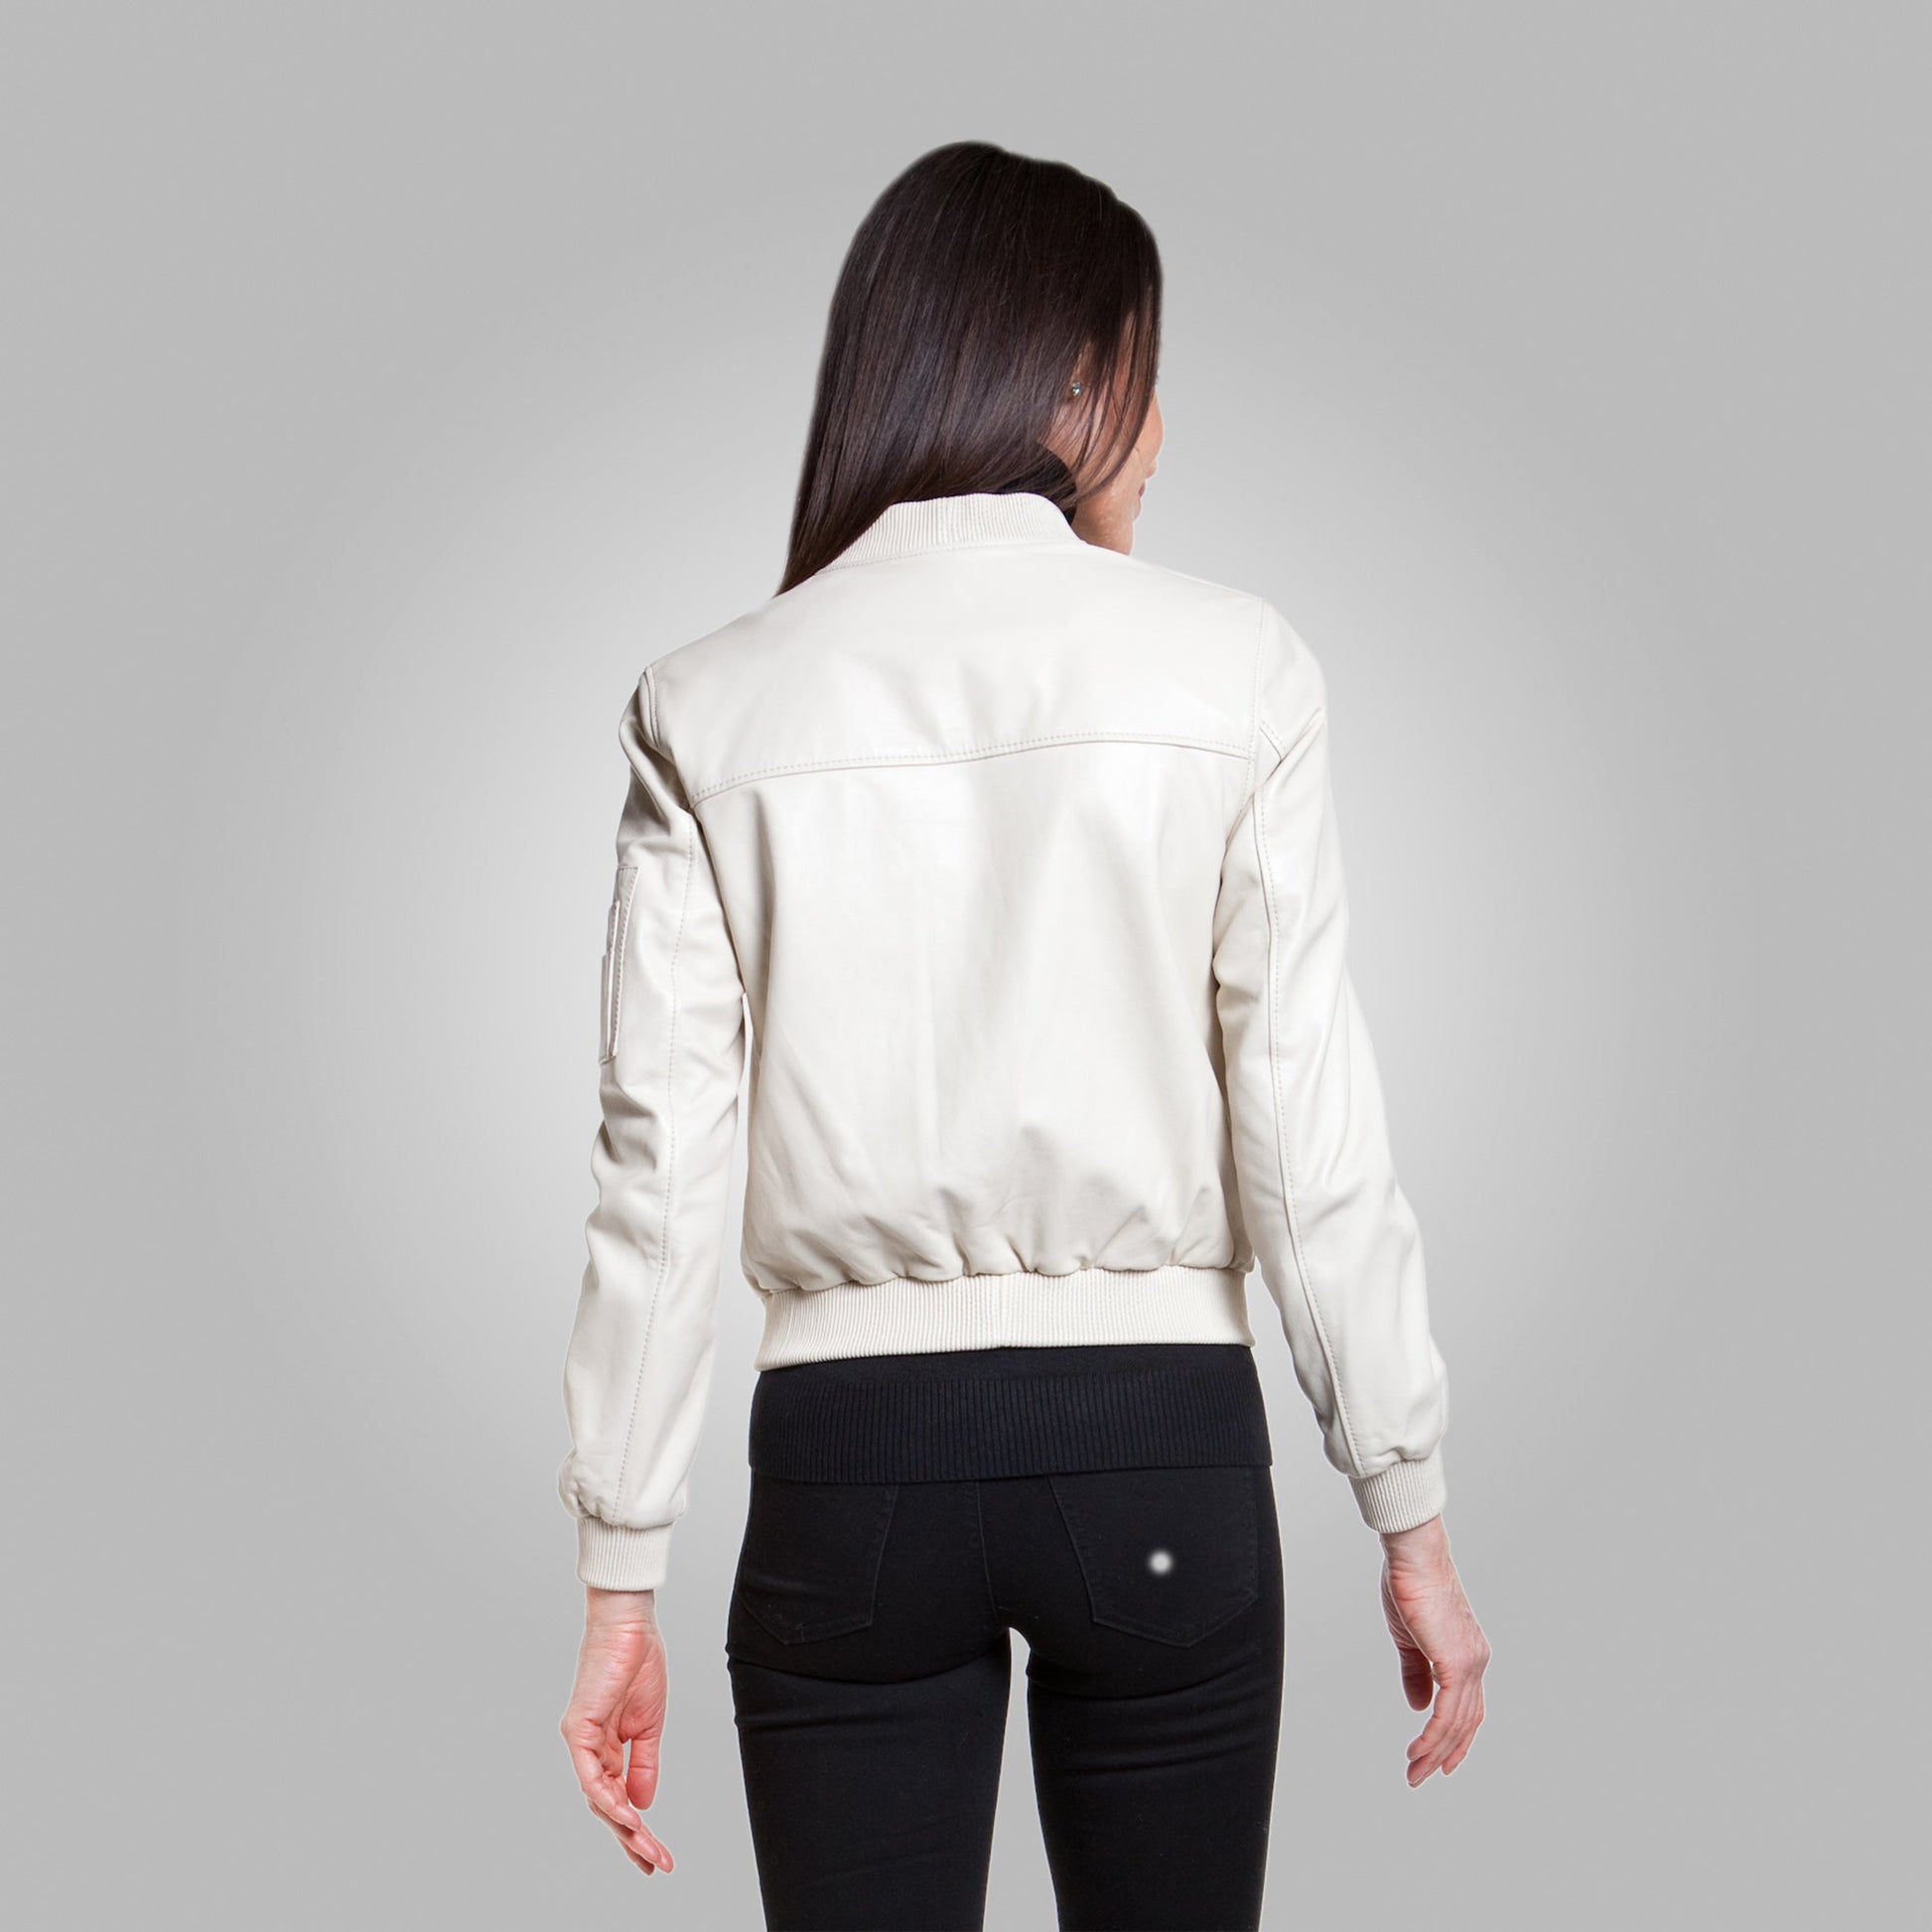 Women’s White Leather Bomber Jacket